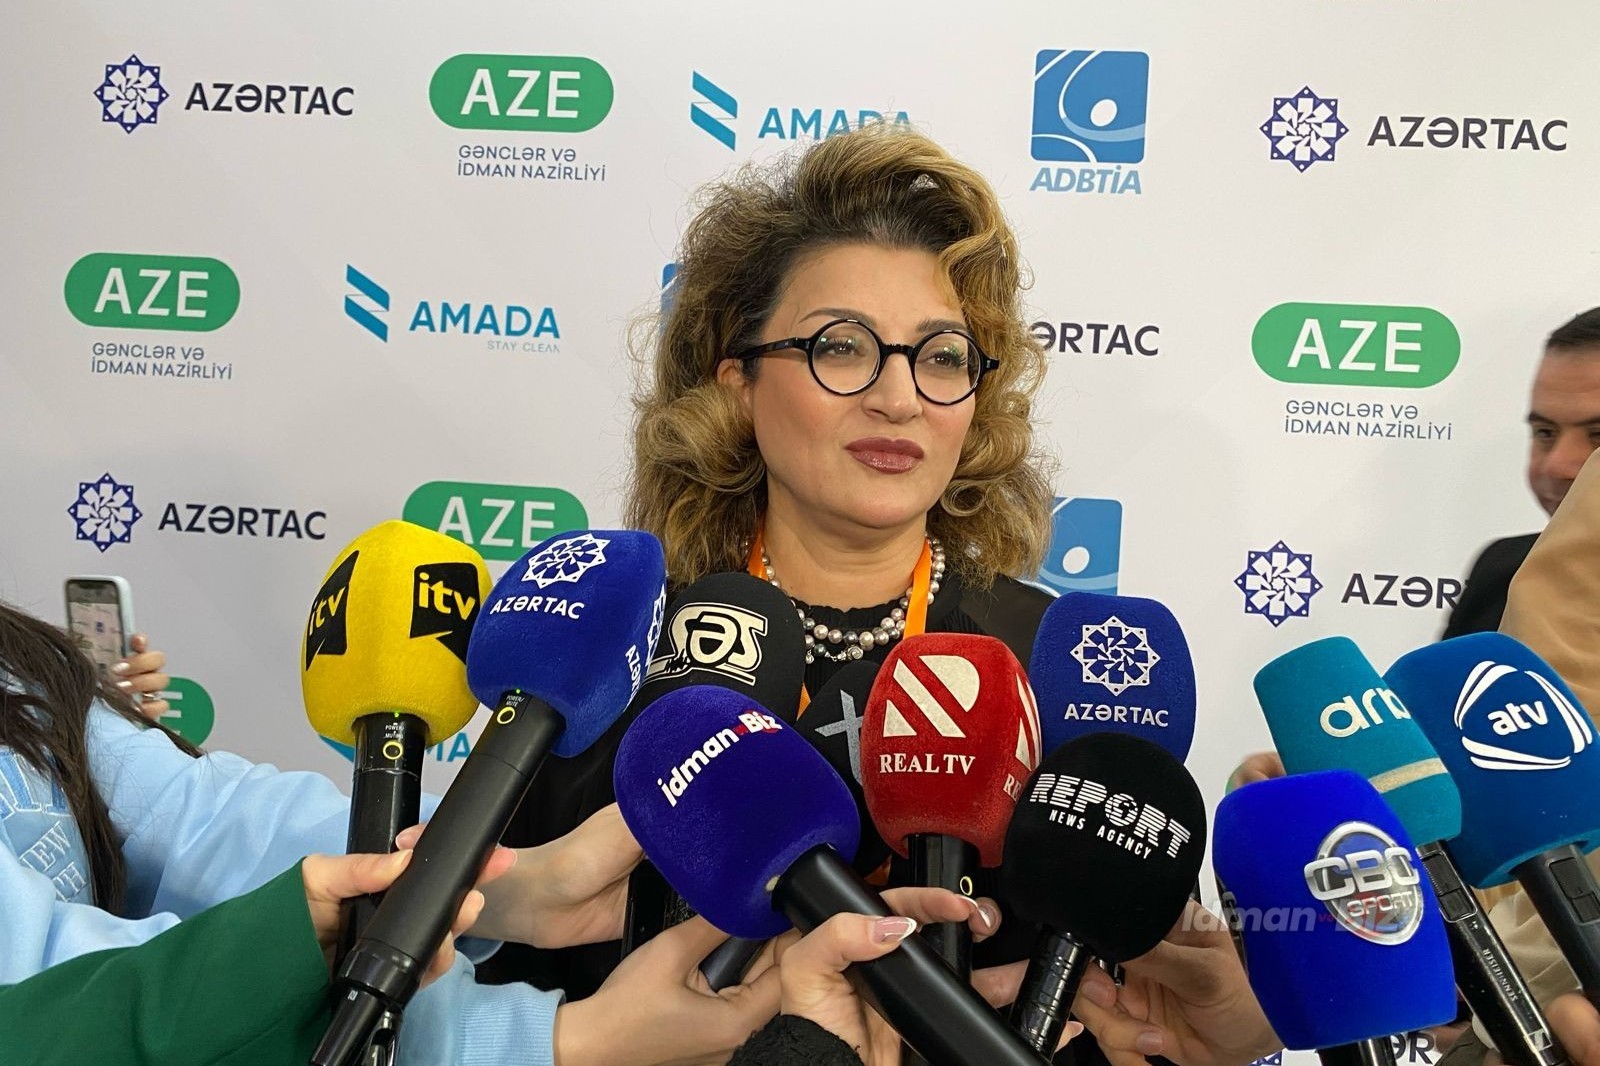 Тахмина Таги-заде: "Азербайджан тесно сотрудничает с международными национальными антидопинговыми агентствами"